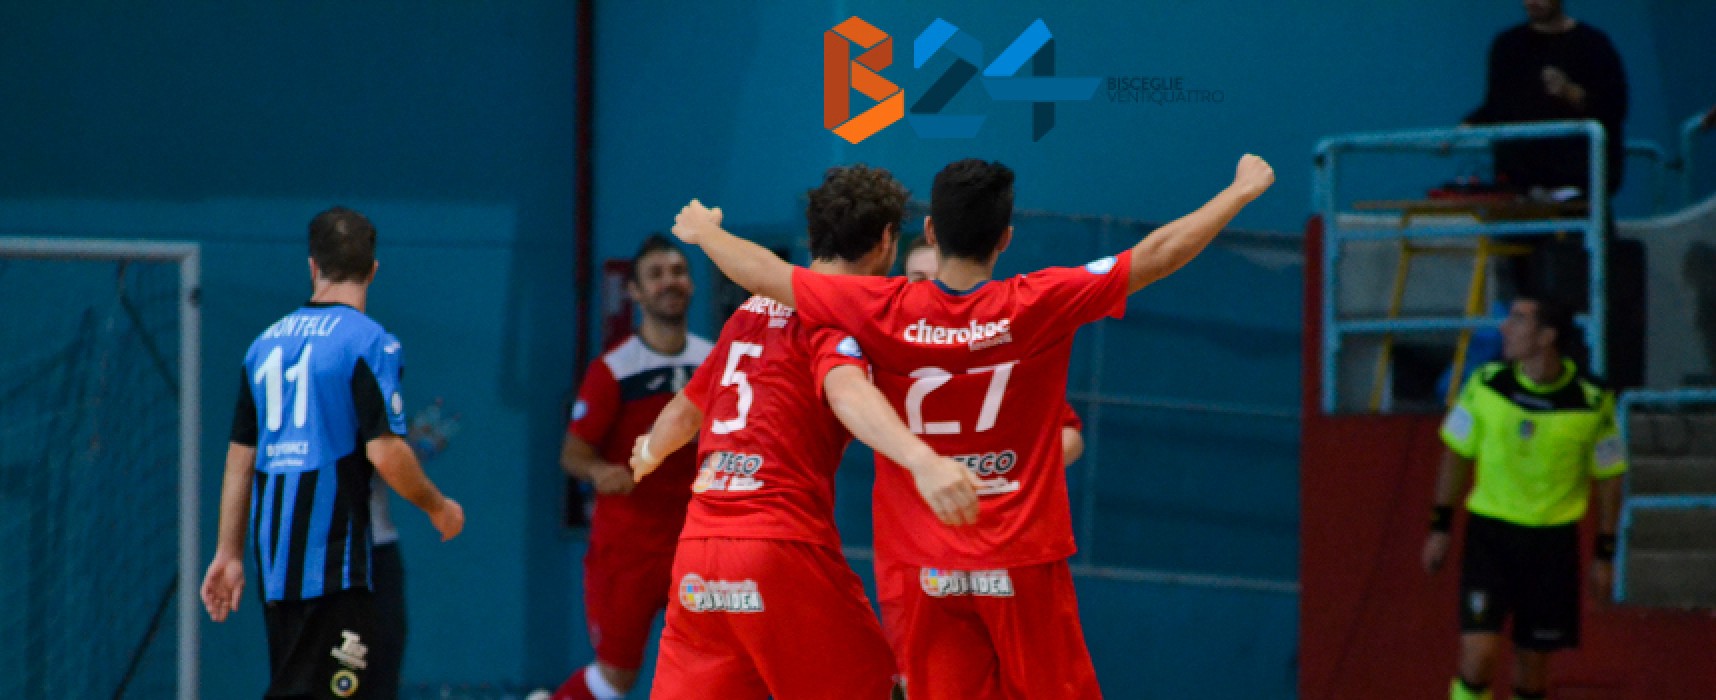 Futsal Bisceglie sconfitto a Policoro / VIDEO highlights